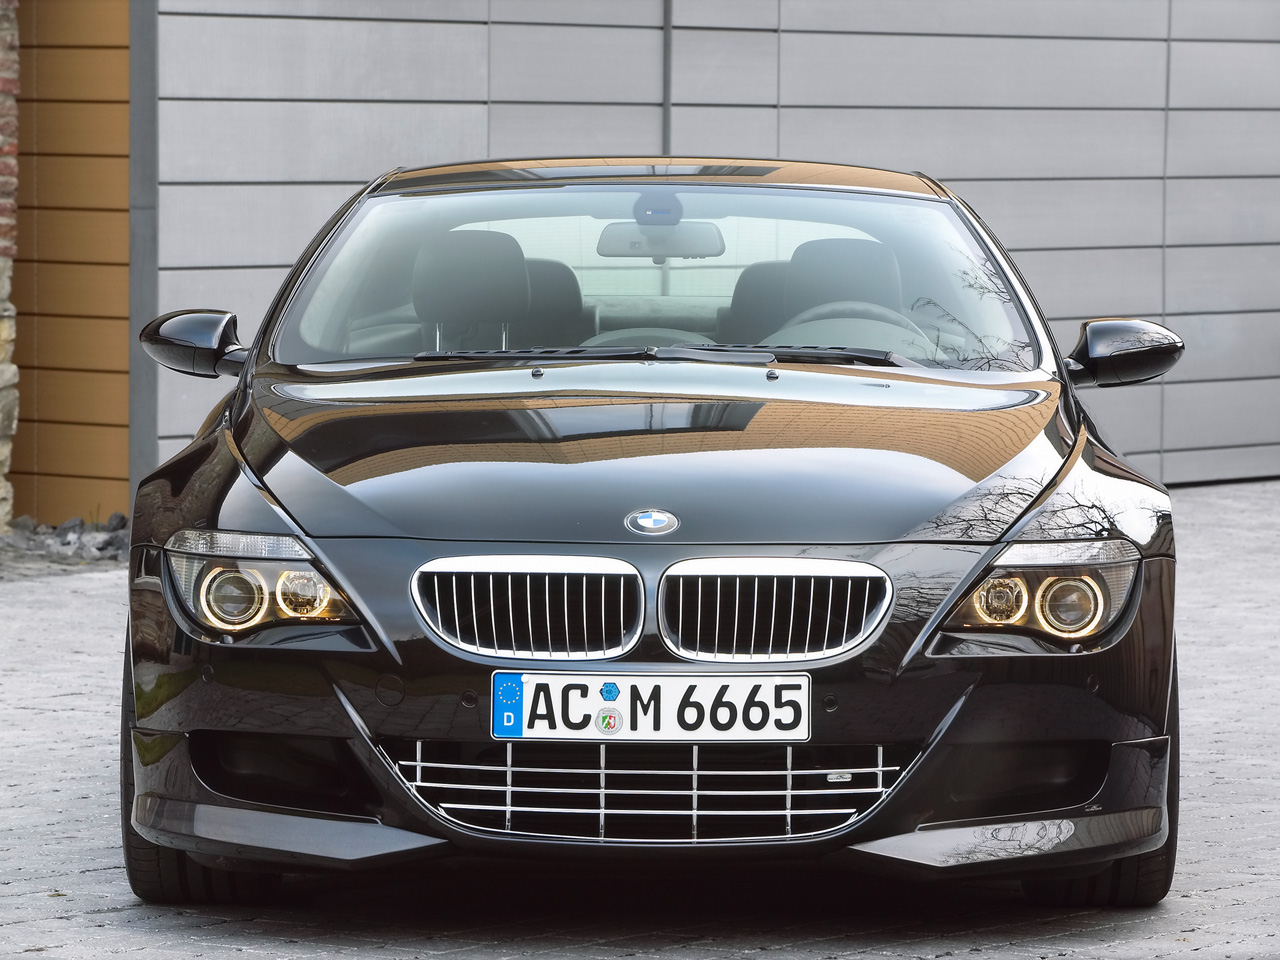 https://blogger.googleusercontent.com/img/b/R29vZ2xl/AVvXsEhIcV8UlIZbzCGE5I7i0t4sYRAFpi1HRzRBTdd5Um7Q9sWbMK0YCmD82ZNw2BRmnFptrAYVB1oTE0BaYaSIlaKZM5vPWbKP2qmiLCmtyFOI1olMPG5g1MpMe0MO5CchYekmdH3J4qtMfYM/s1600/2006-AC-Schnitzer-ACS6-Sport-BMW-F-1280x960.jpg